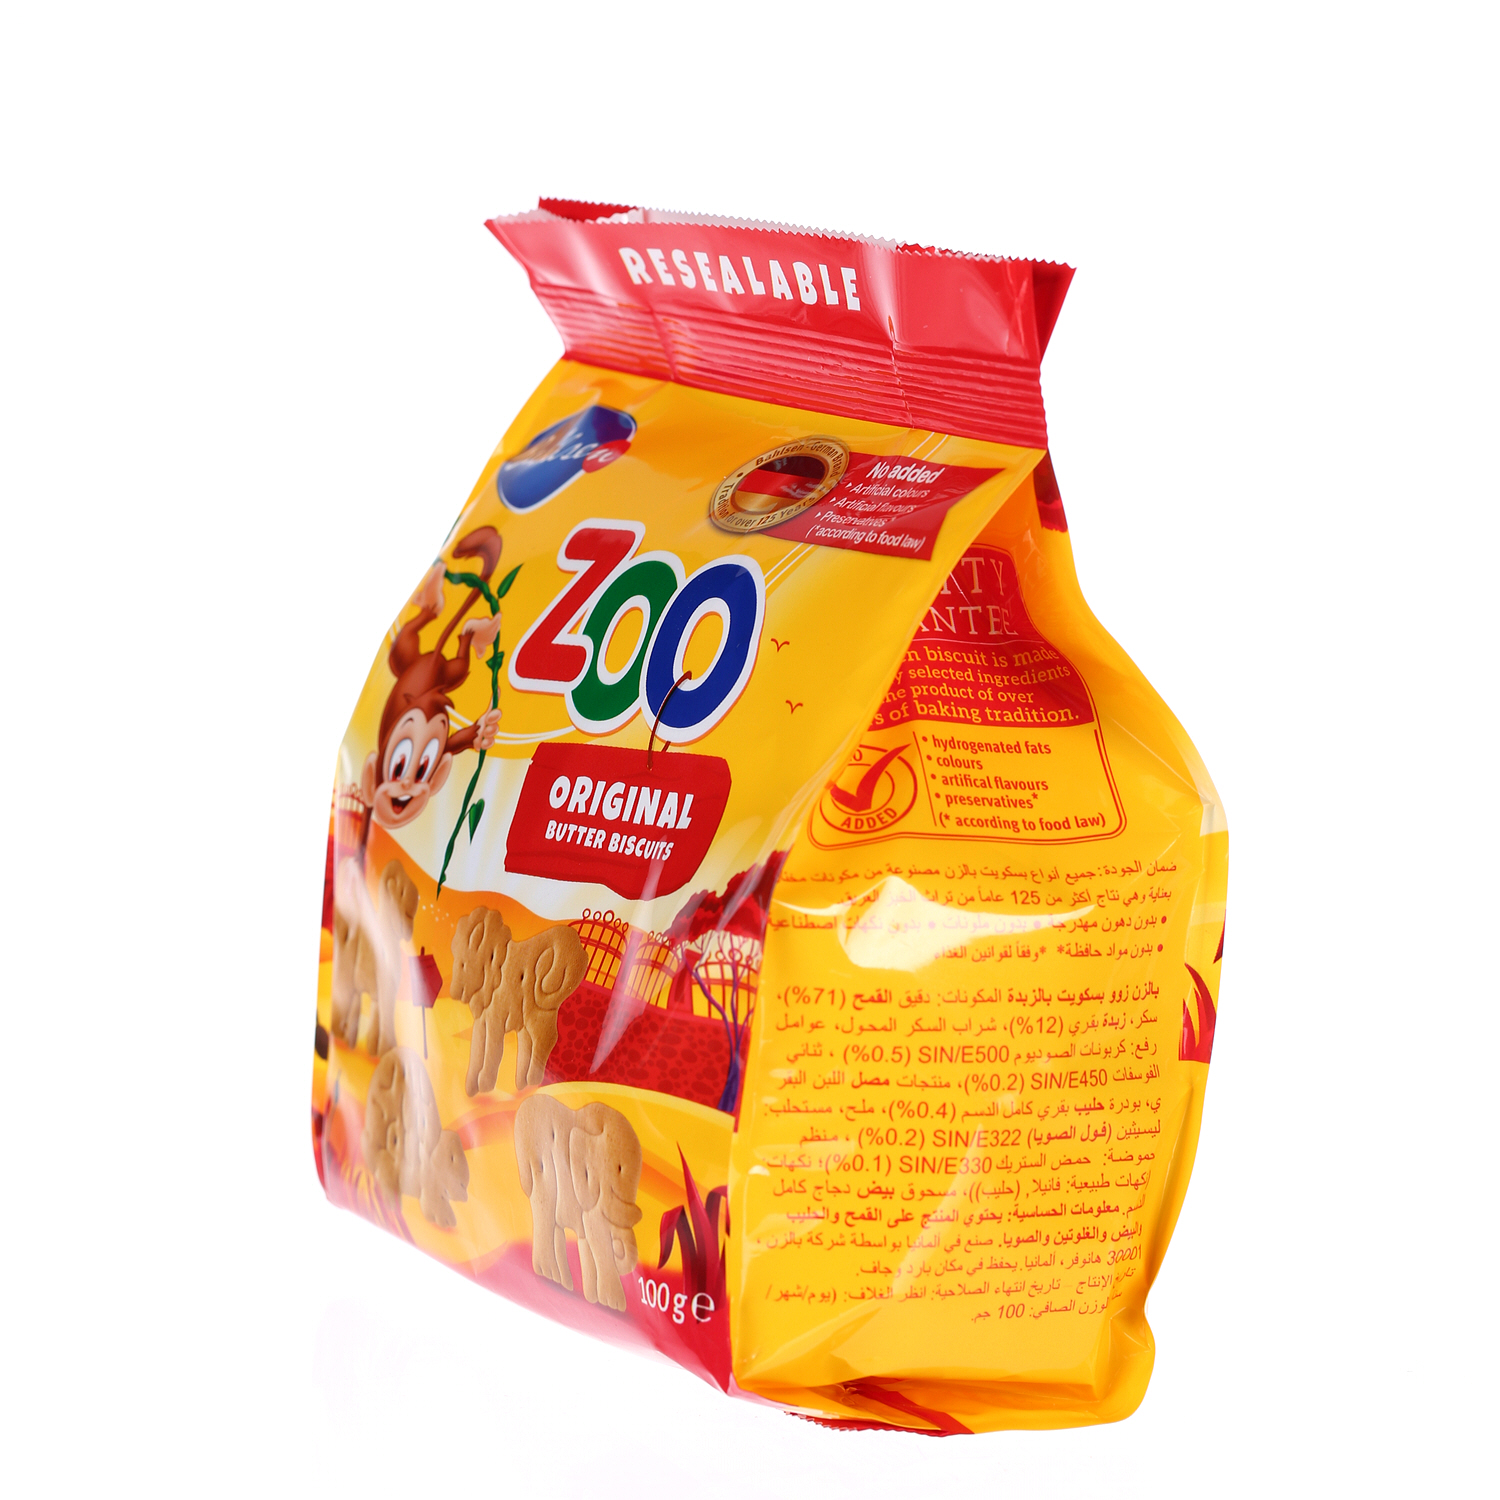 Bahlsens Mini Biscuits Zoo Jungle Original 100 g